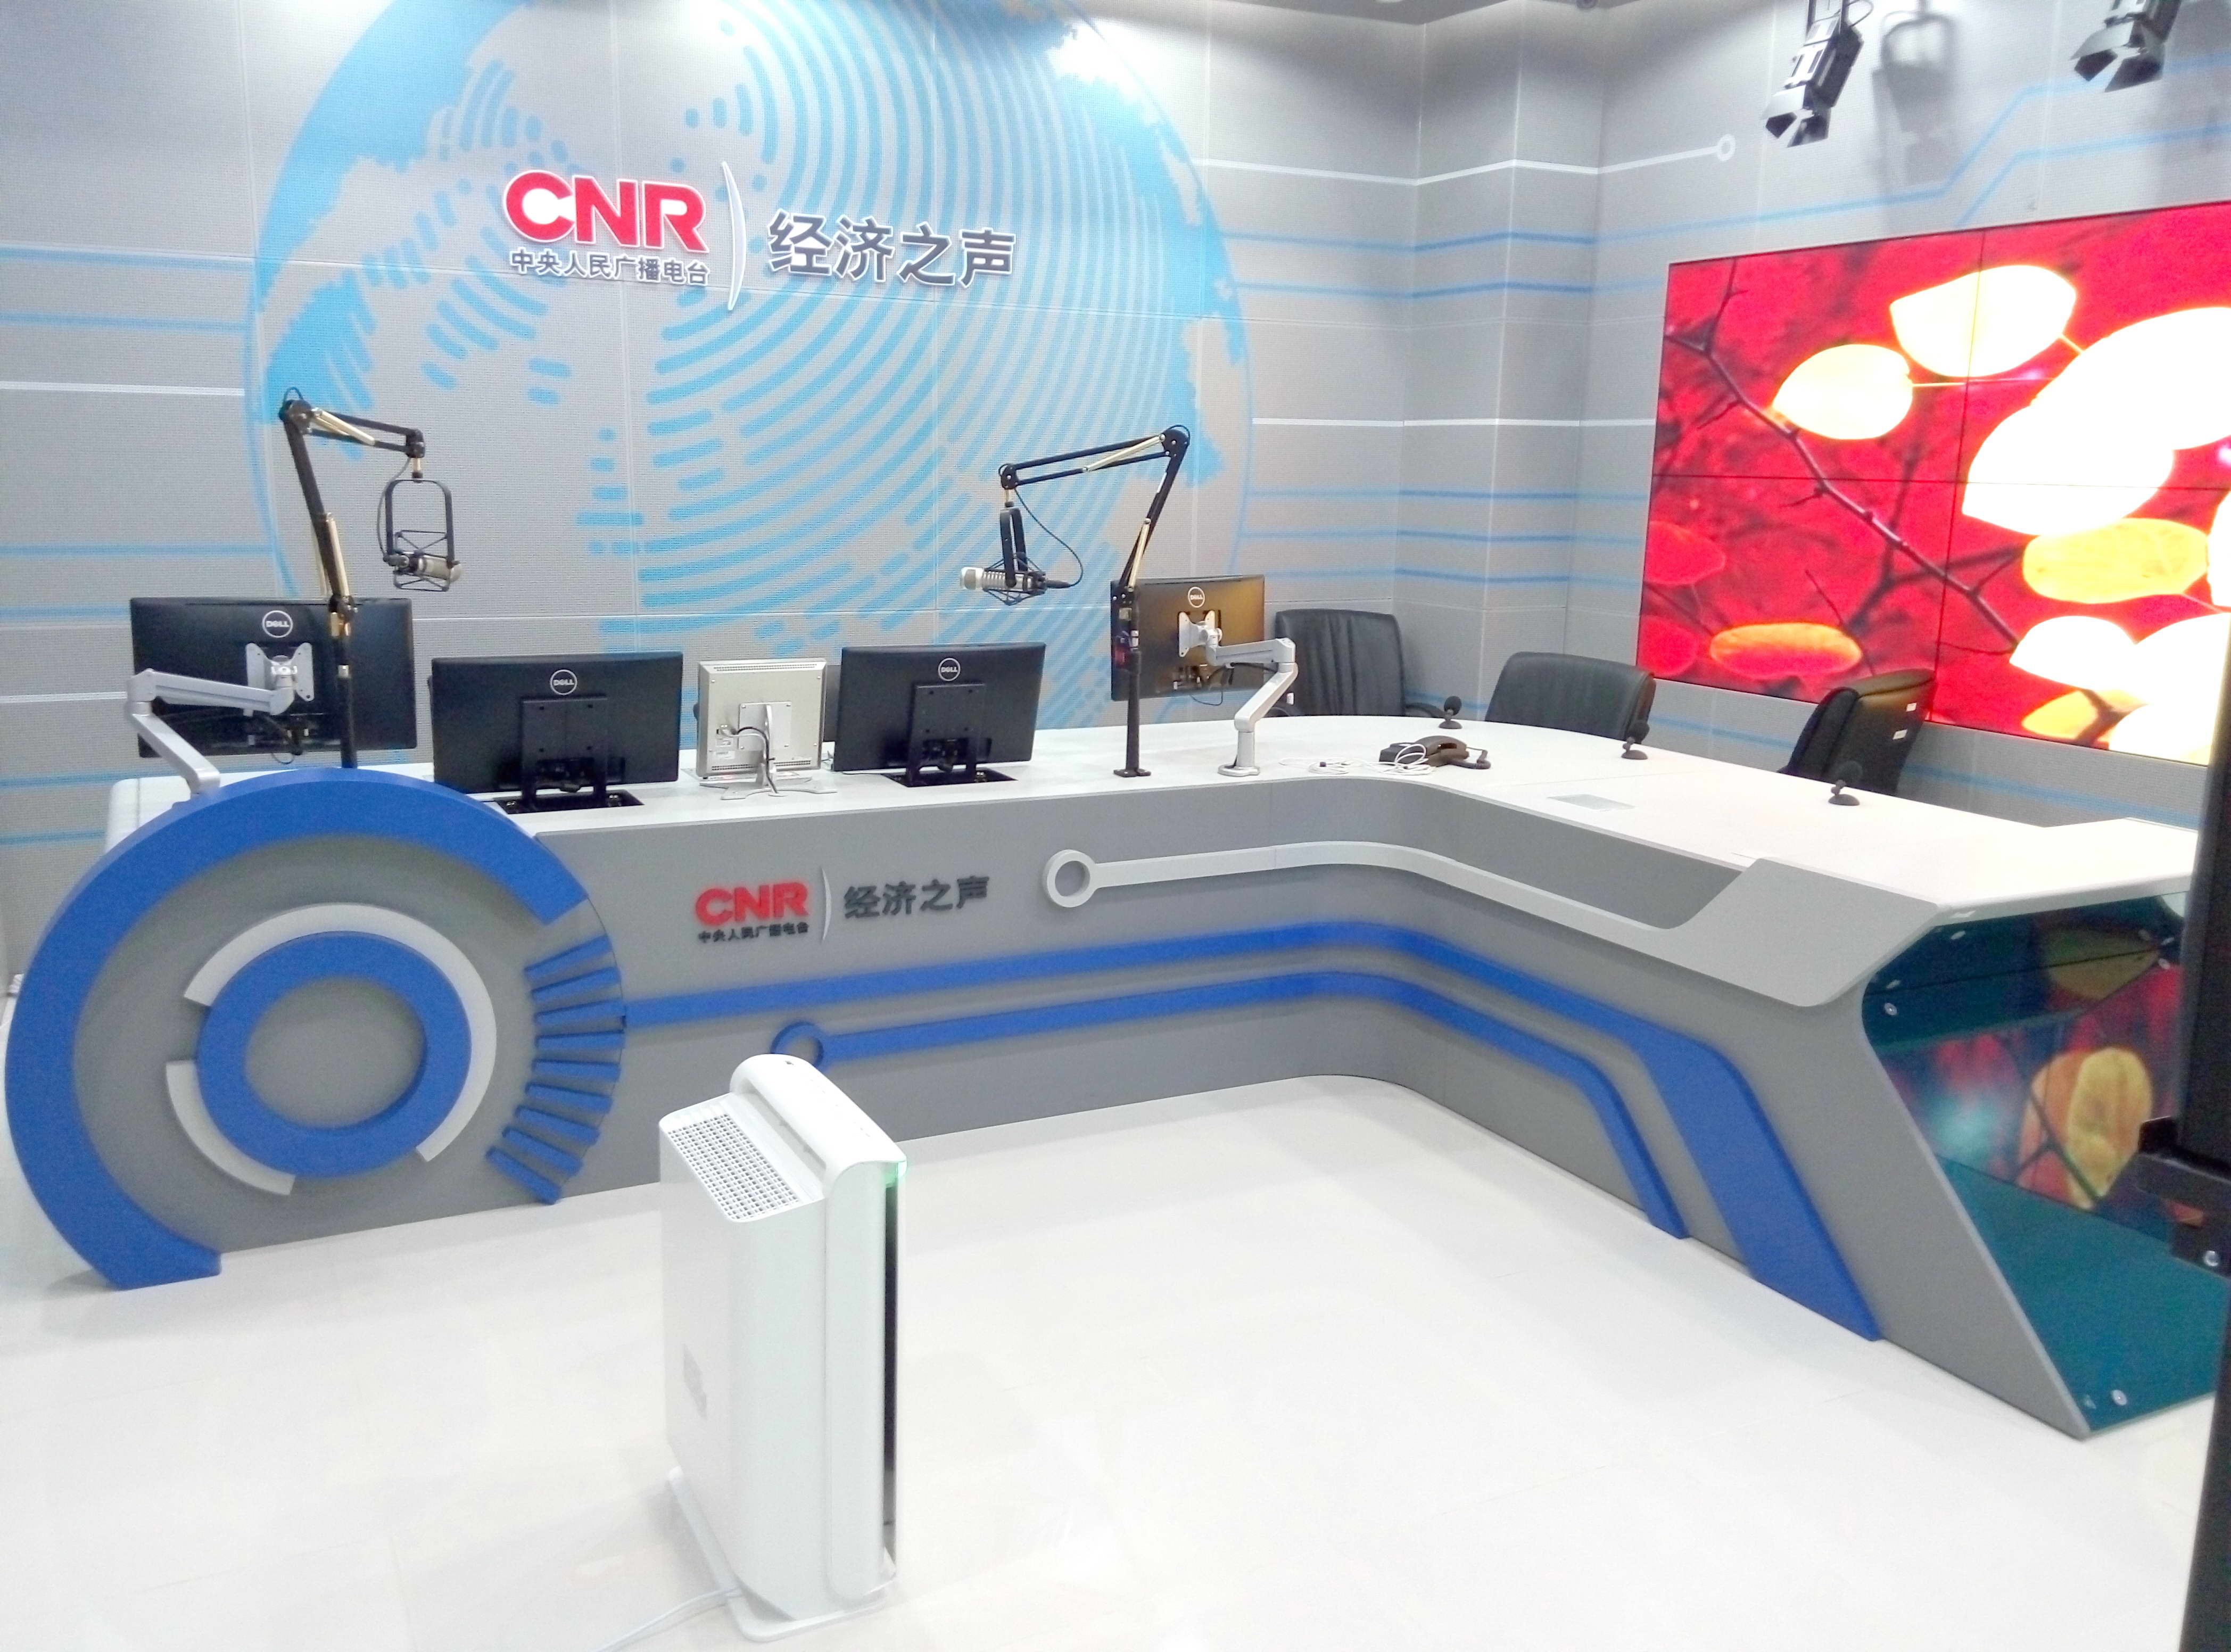 CNR-经济之声-直播控制台项目